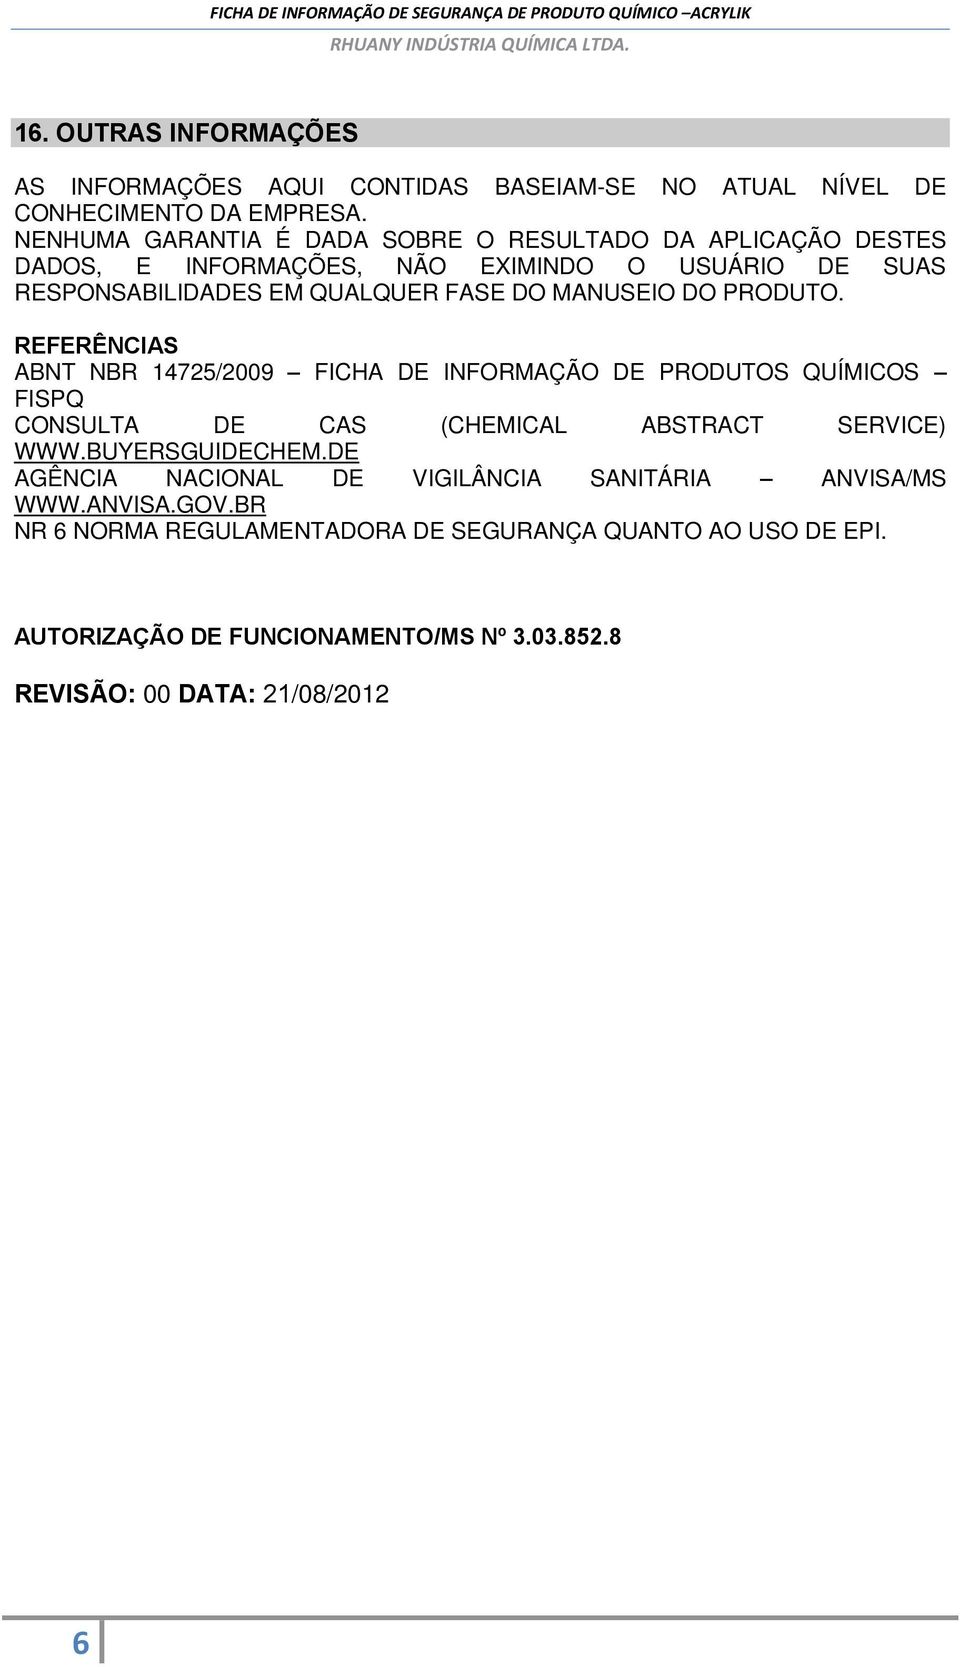 MANUSEIO DO PRODUTO. REFERÊNCIAS ABNT NBR 14725/2009 FICHA DE INFORMAÇÃO DE PRODUTOS QUÍMICOS FISPQ CONSULTA DE CAS (CHEMICAL ABSTRACT SERVICE) WWW.